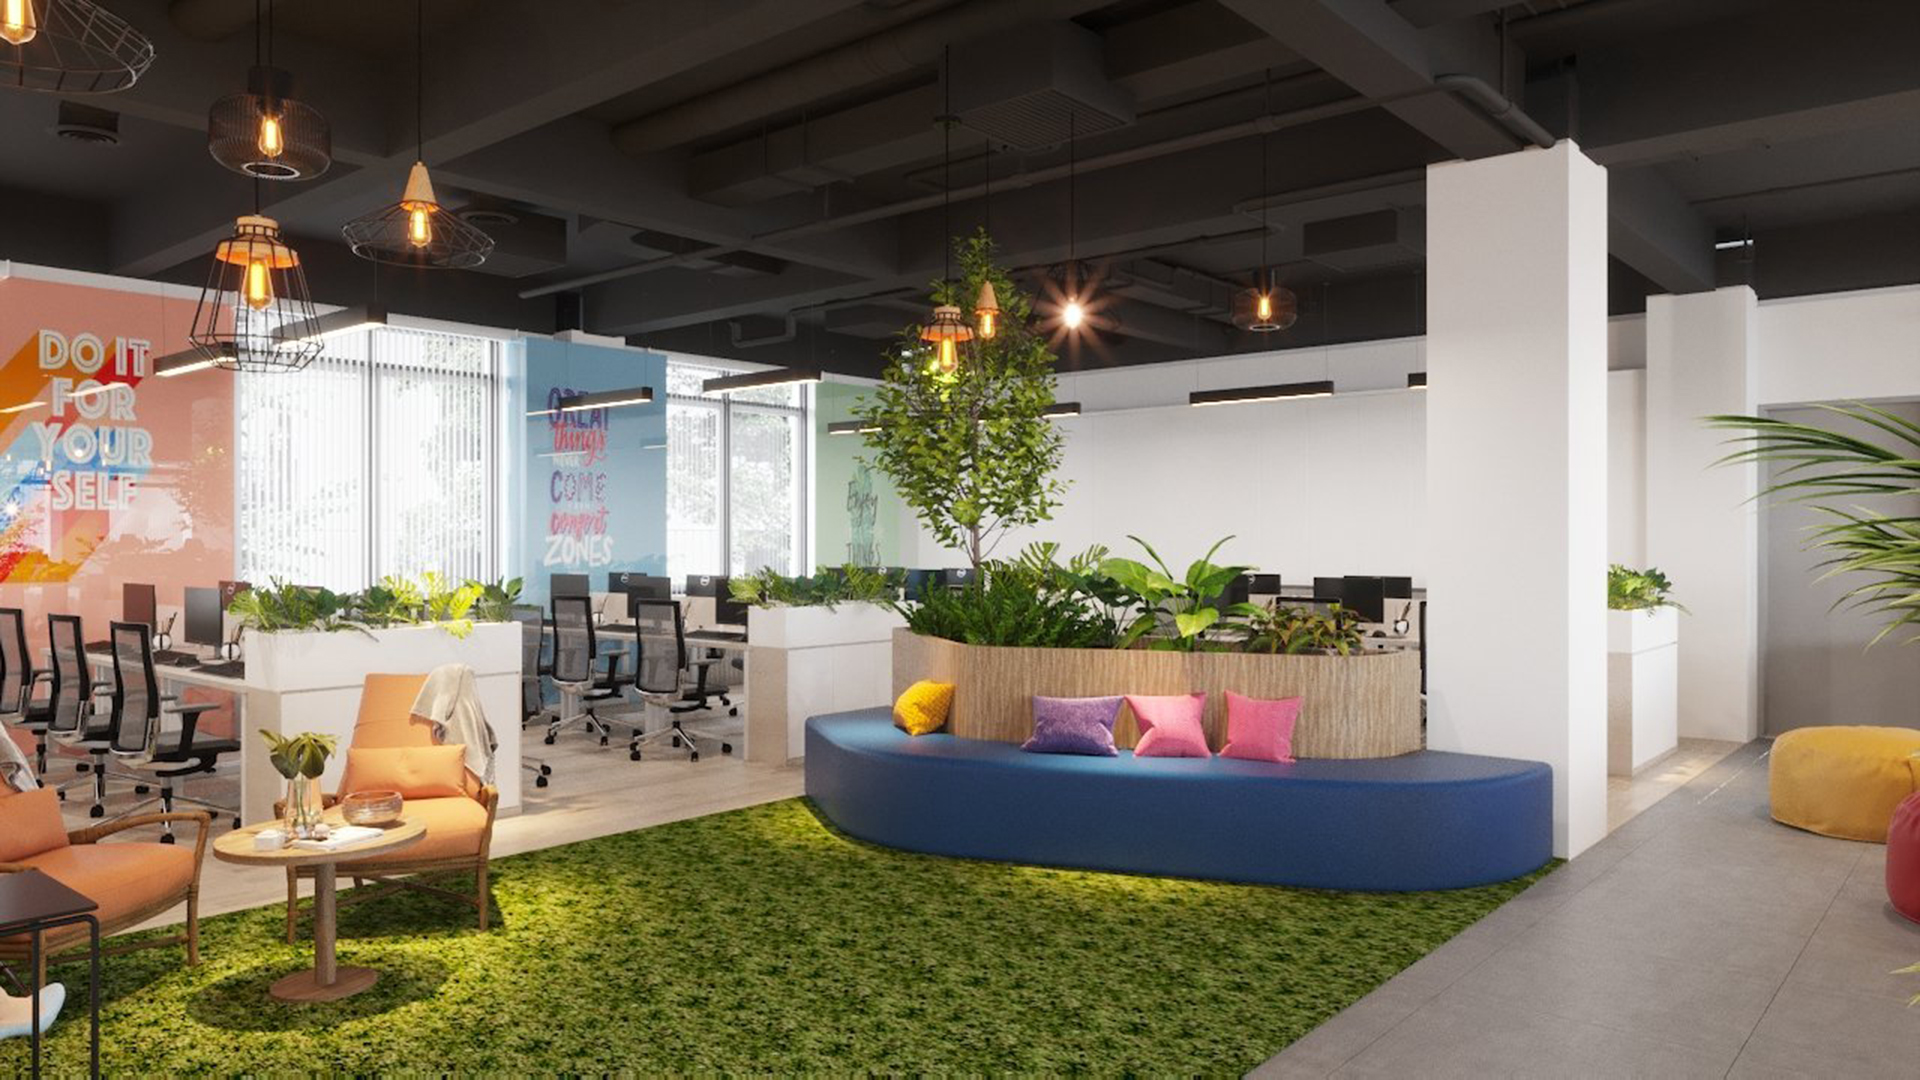 Văn phòng chính bài trí các chậu cây xanh - Thiết kế bởi ICADVietnam